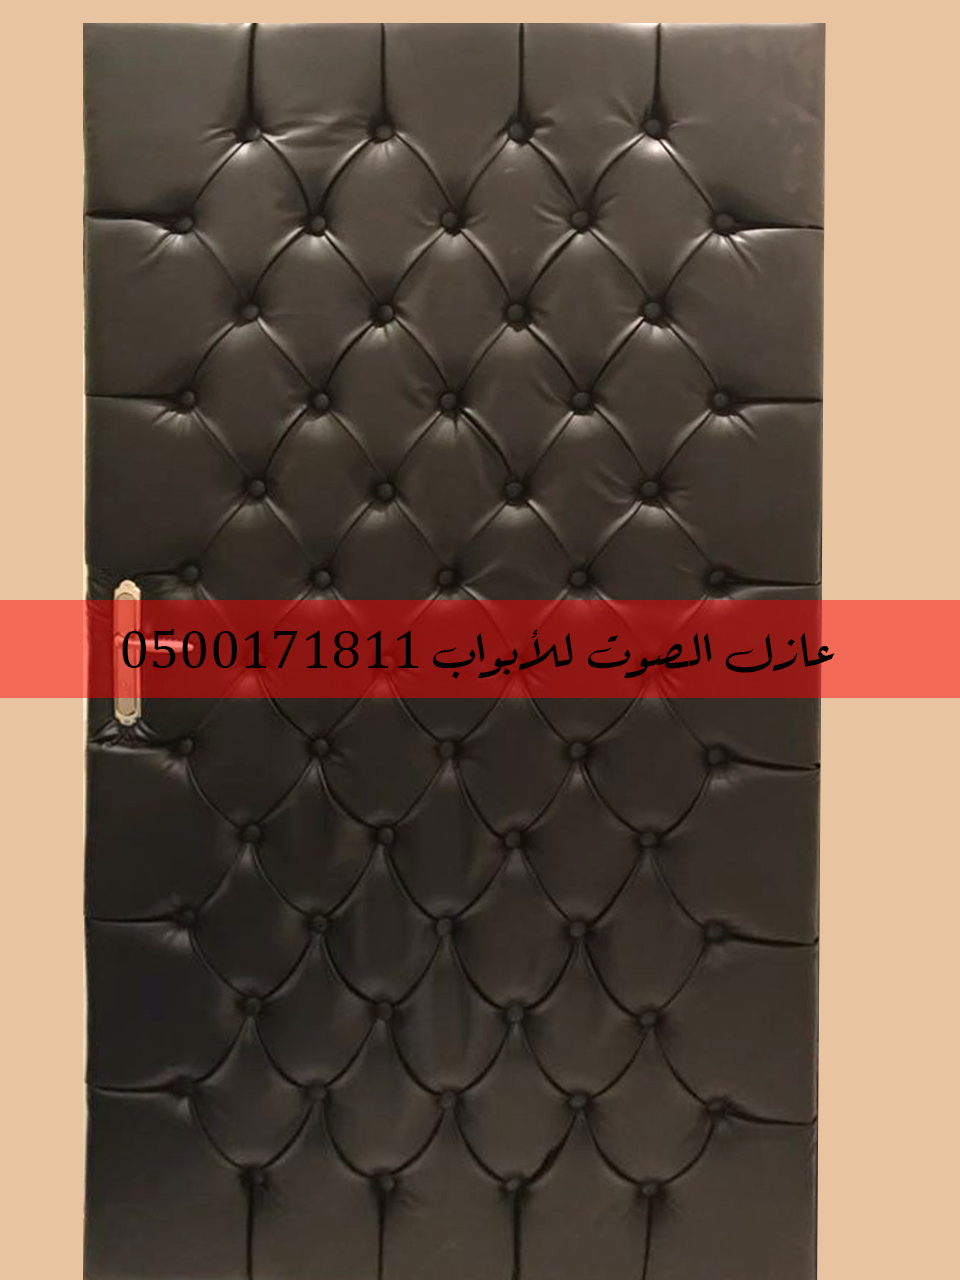 أبواب خشبية جلدية عازلة ضد الصوت بأفضل مواد العزل الصوتي على الإطلاق 0500171811